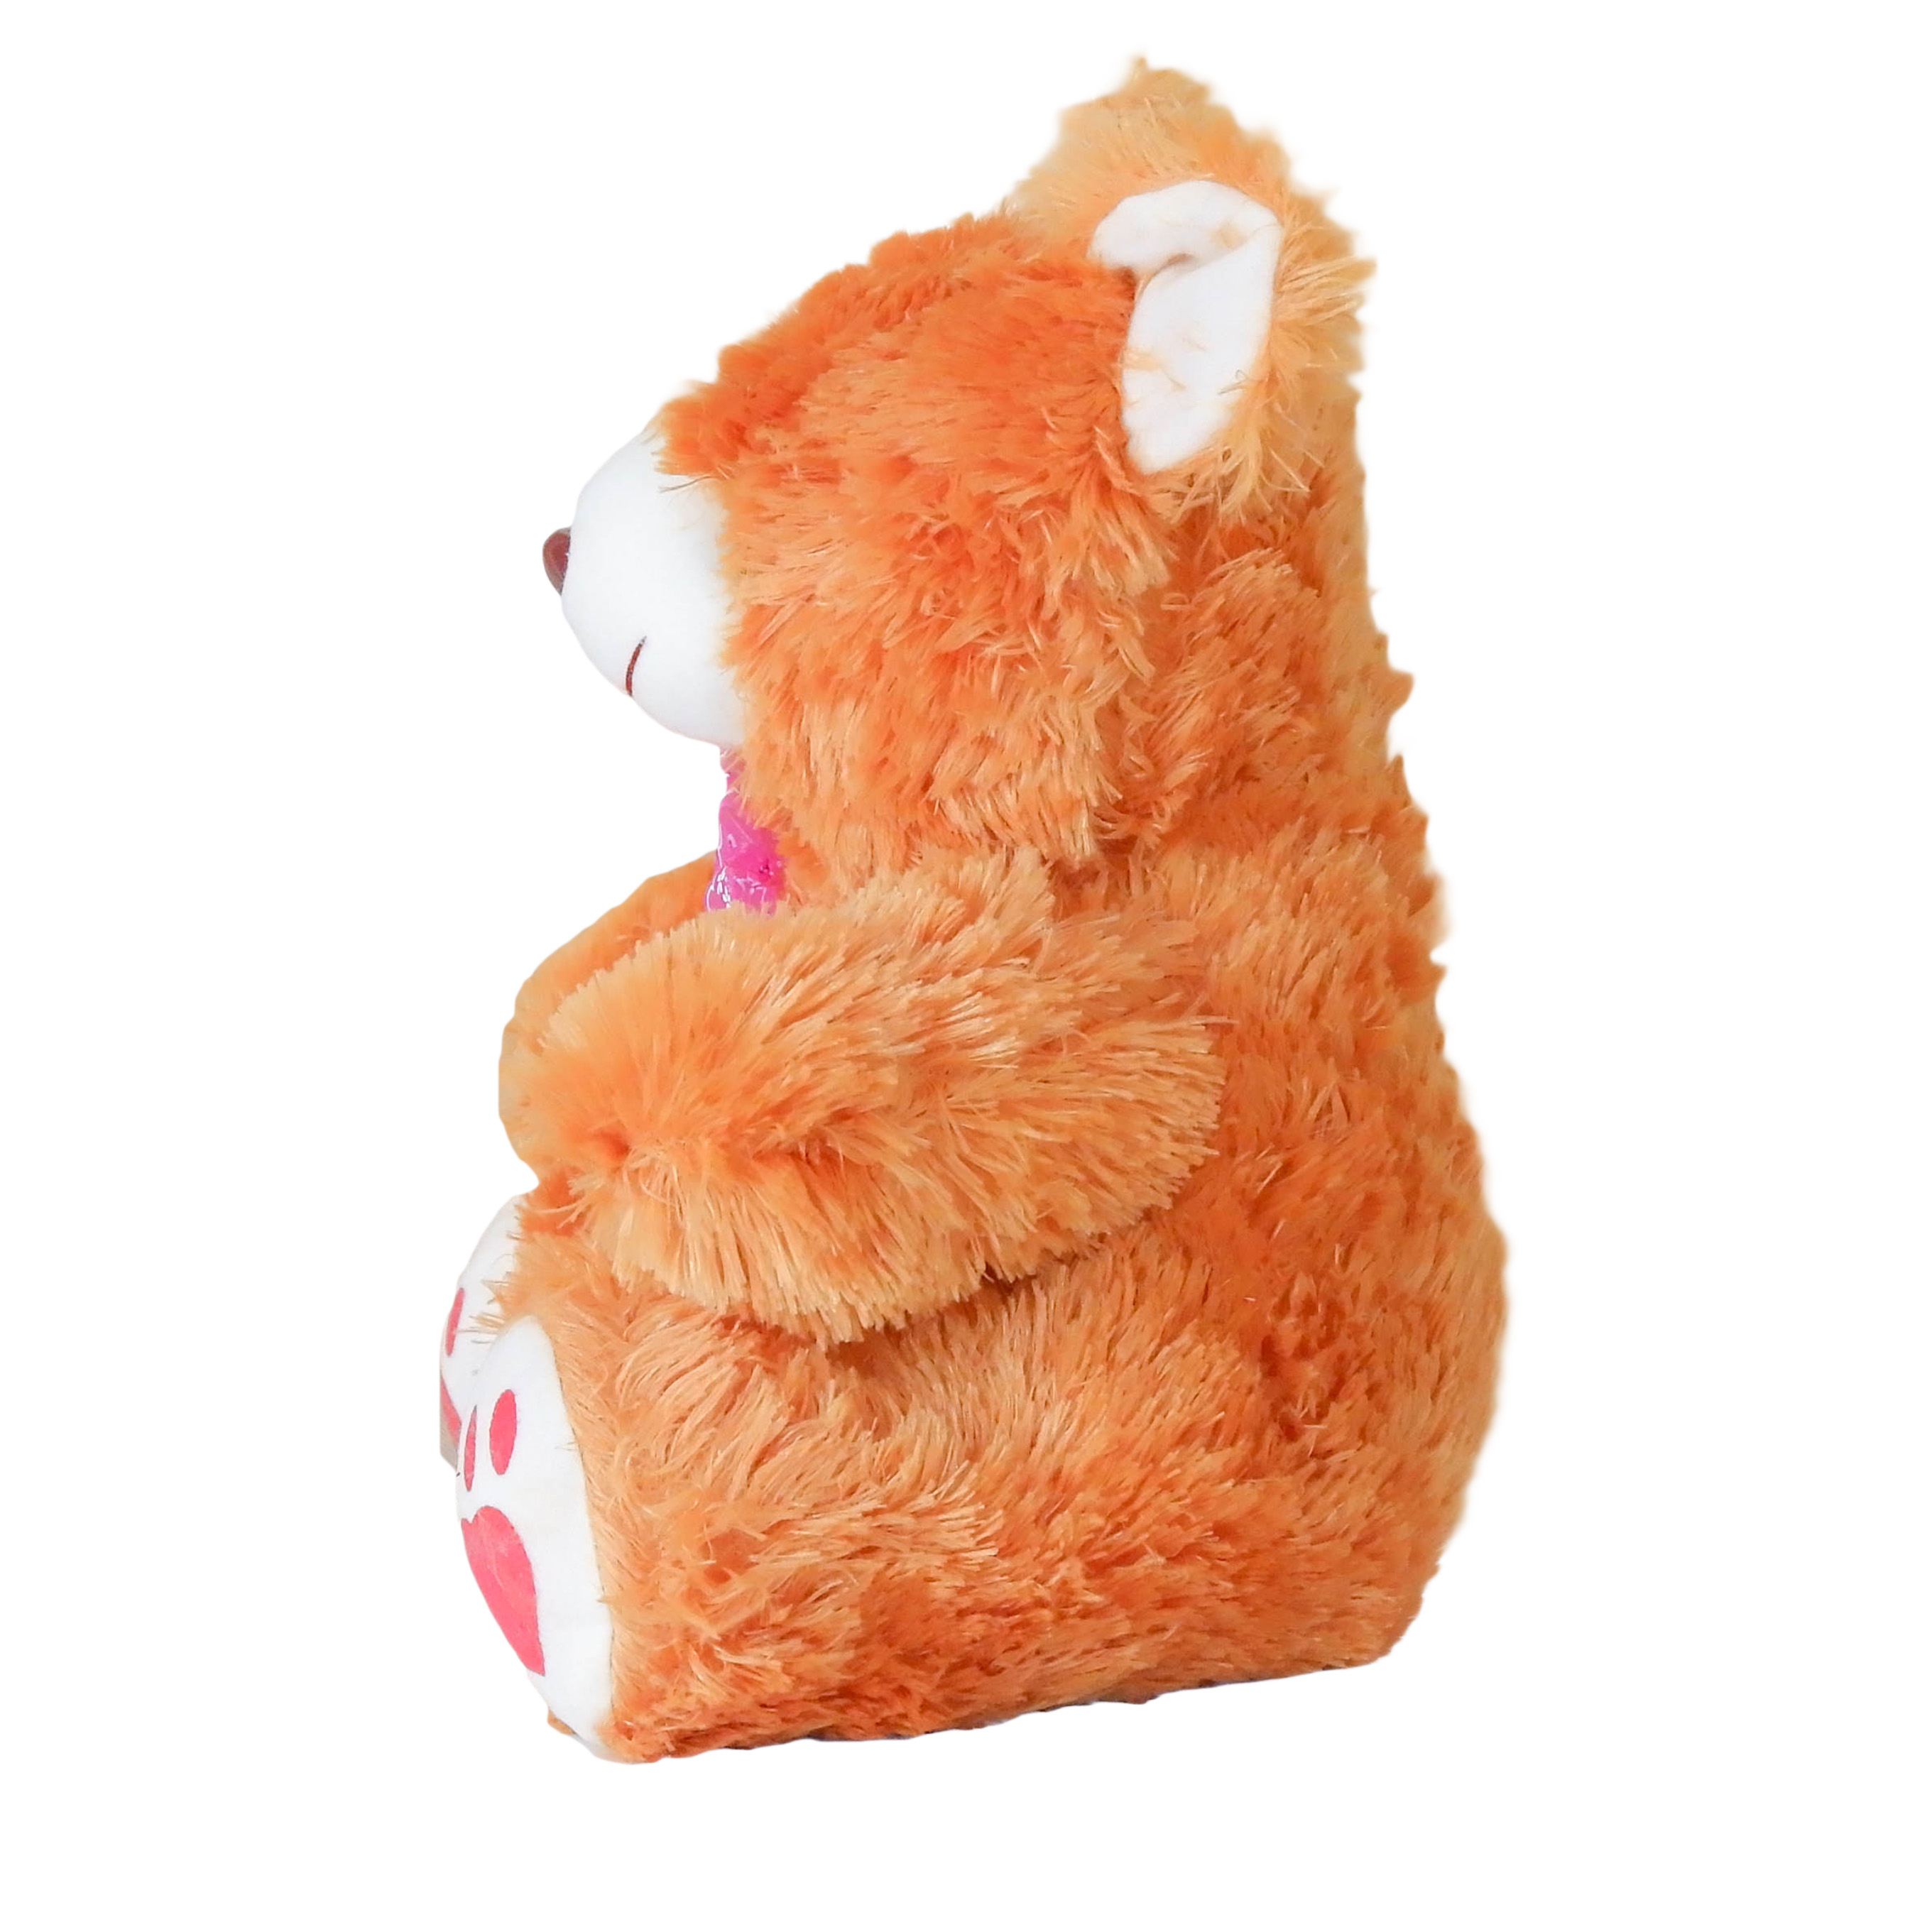 ตุ๊กตา  หมีนั่ง ขนฟู สูง 12 นิ้ว ขนฟูสุดน่ารัก น่ากอด ยัดใยสังเคราะห์ทั้งตัว มี 3 สีให้เลือก